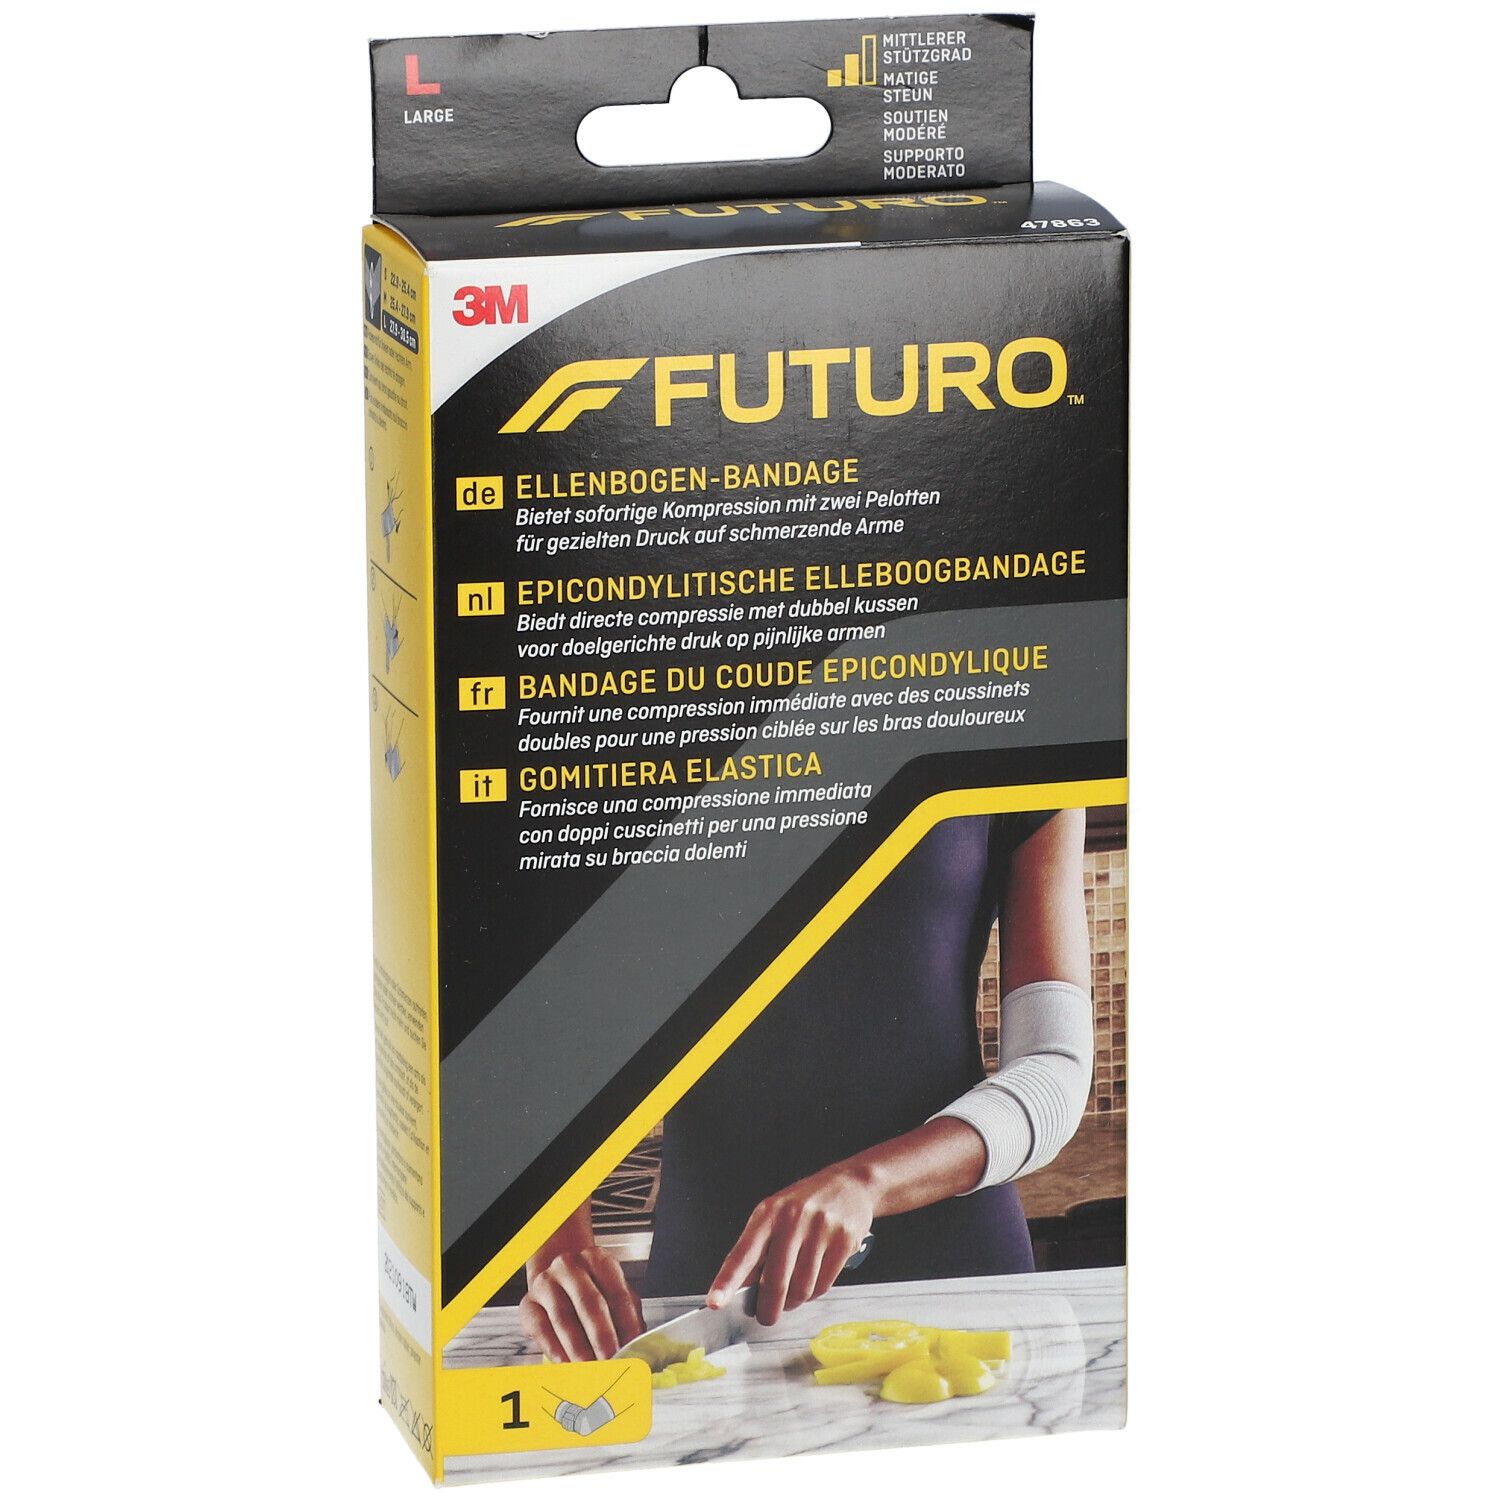 FUTURO™ Ellenbogen-Bandage L